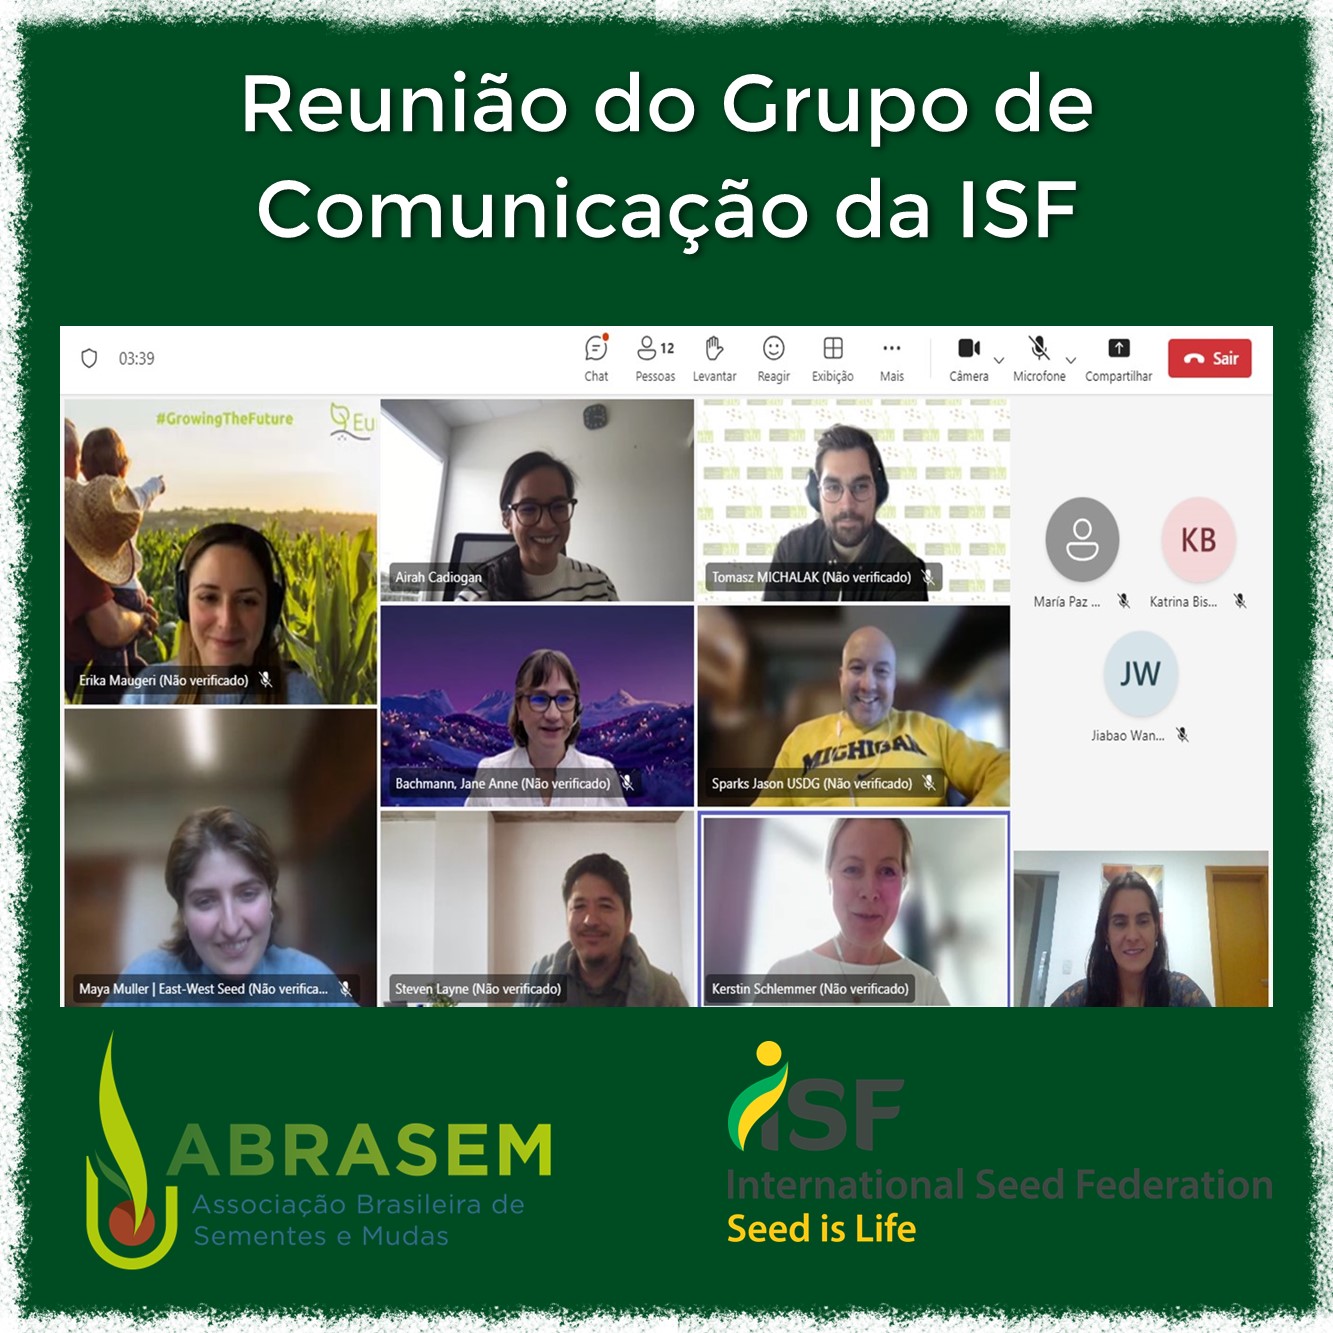 Reunião do Grupo de Comunicação da ISF